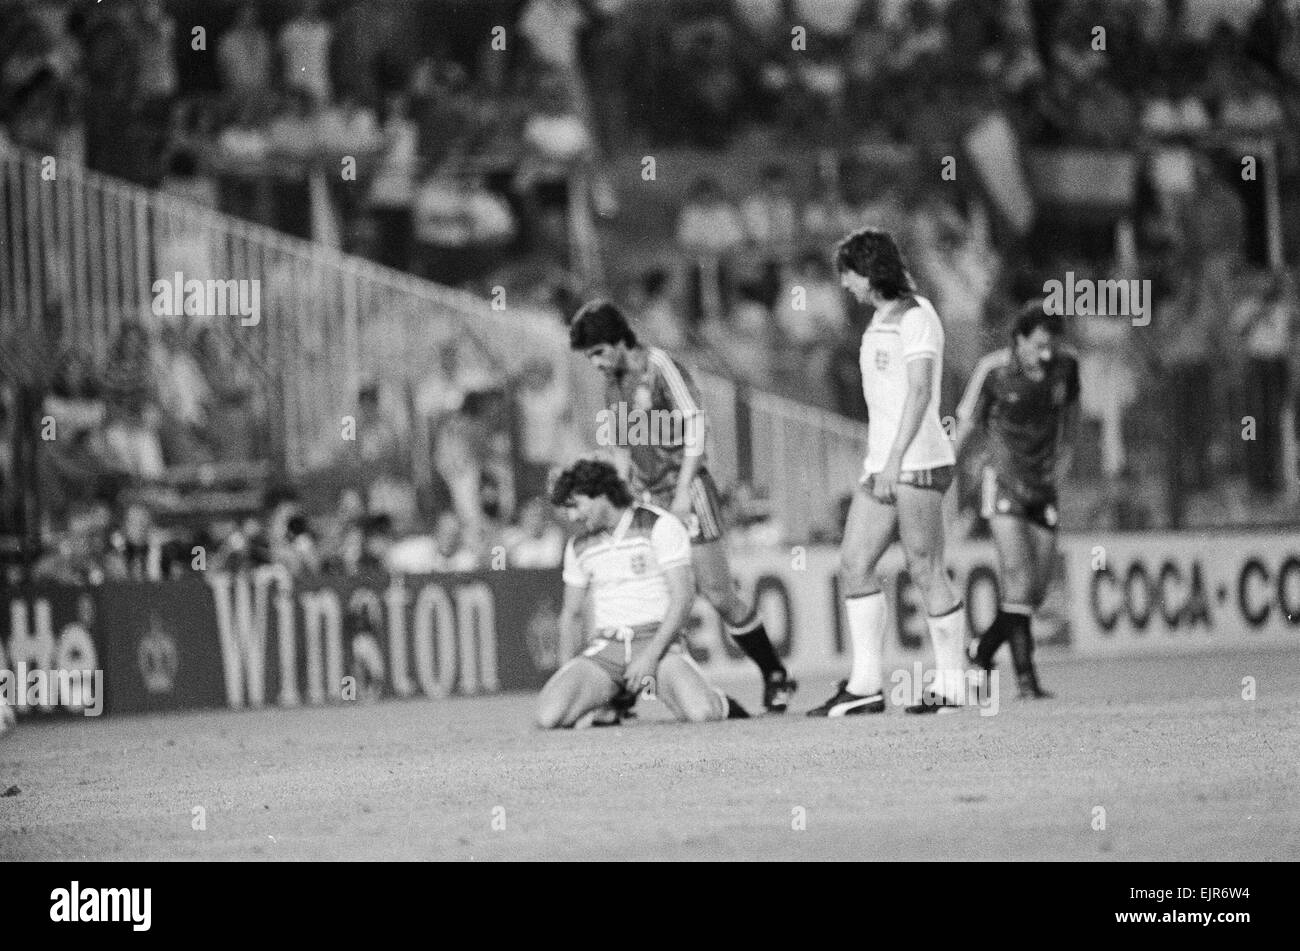 1982 World Cup Finale zweite Runde Gruppe B entsprechen in Madrid, Spanien. Spanien 0 V England 0. Englands Kevin Keegan niedergeschlagen nach fehlt ein Tor erzielte Chance. 29. Juni 1982. Stockfoto